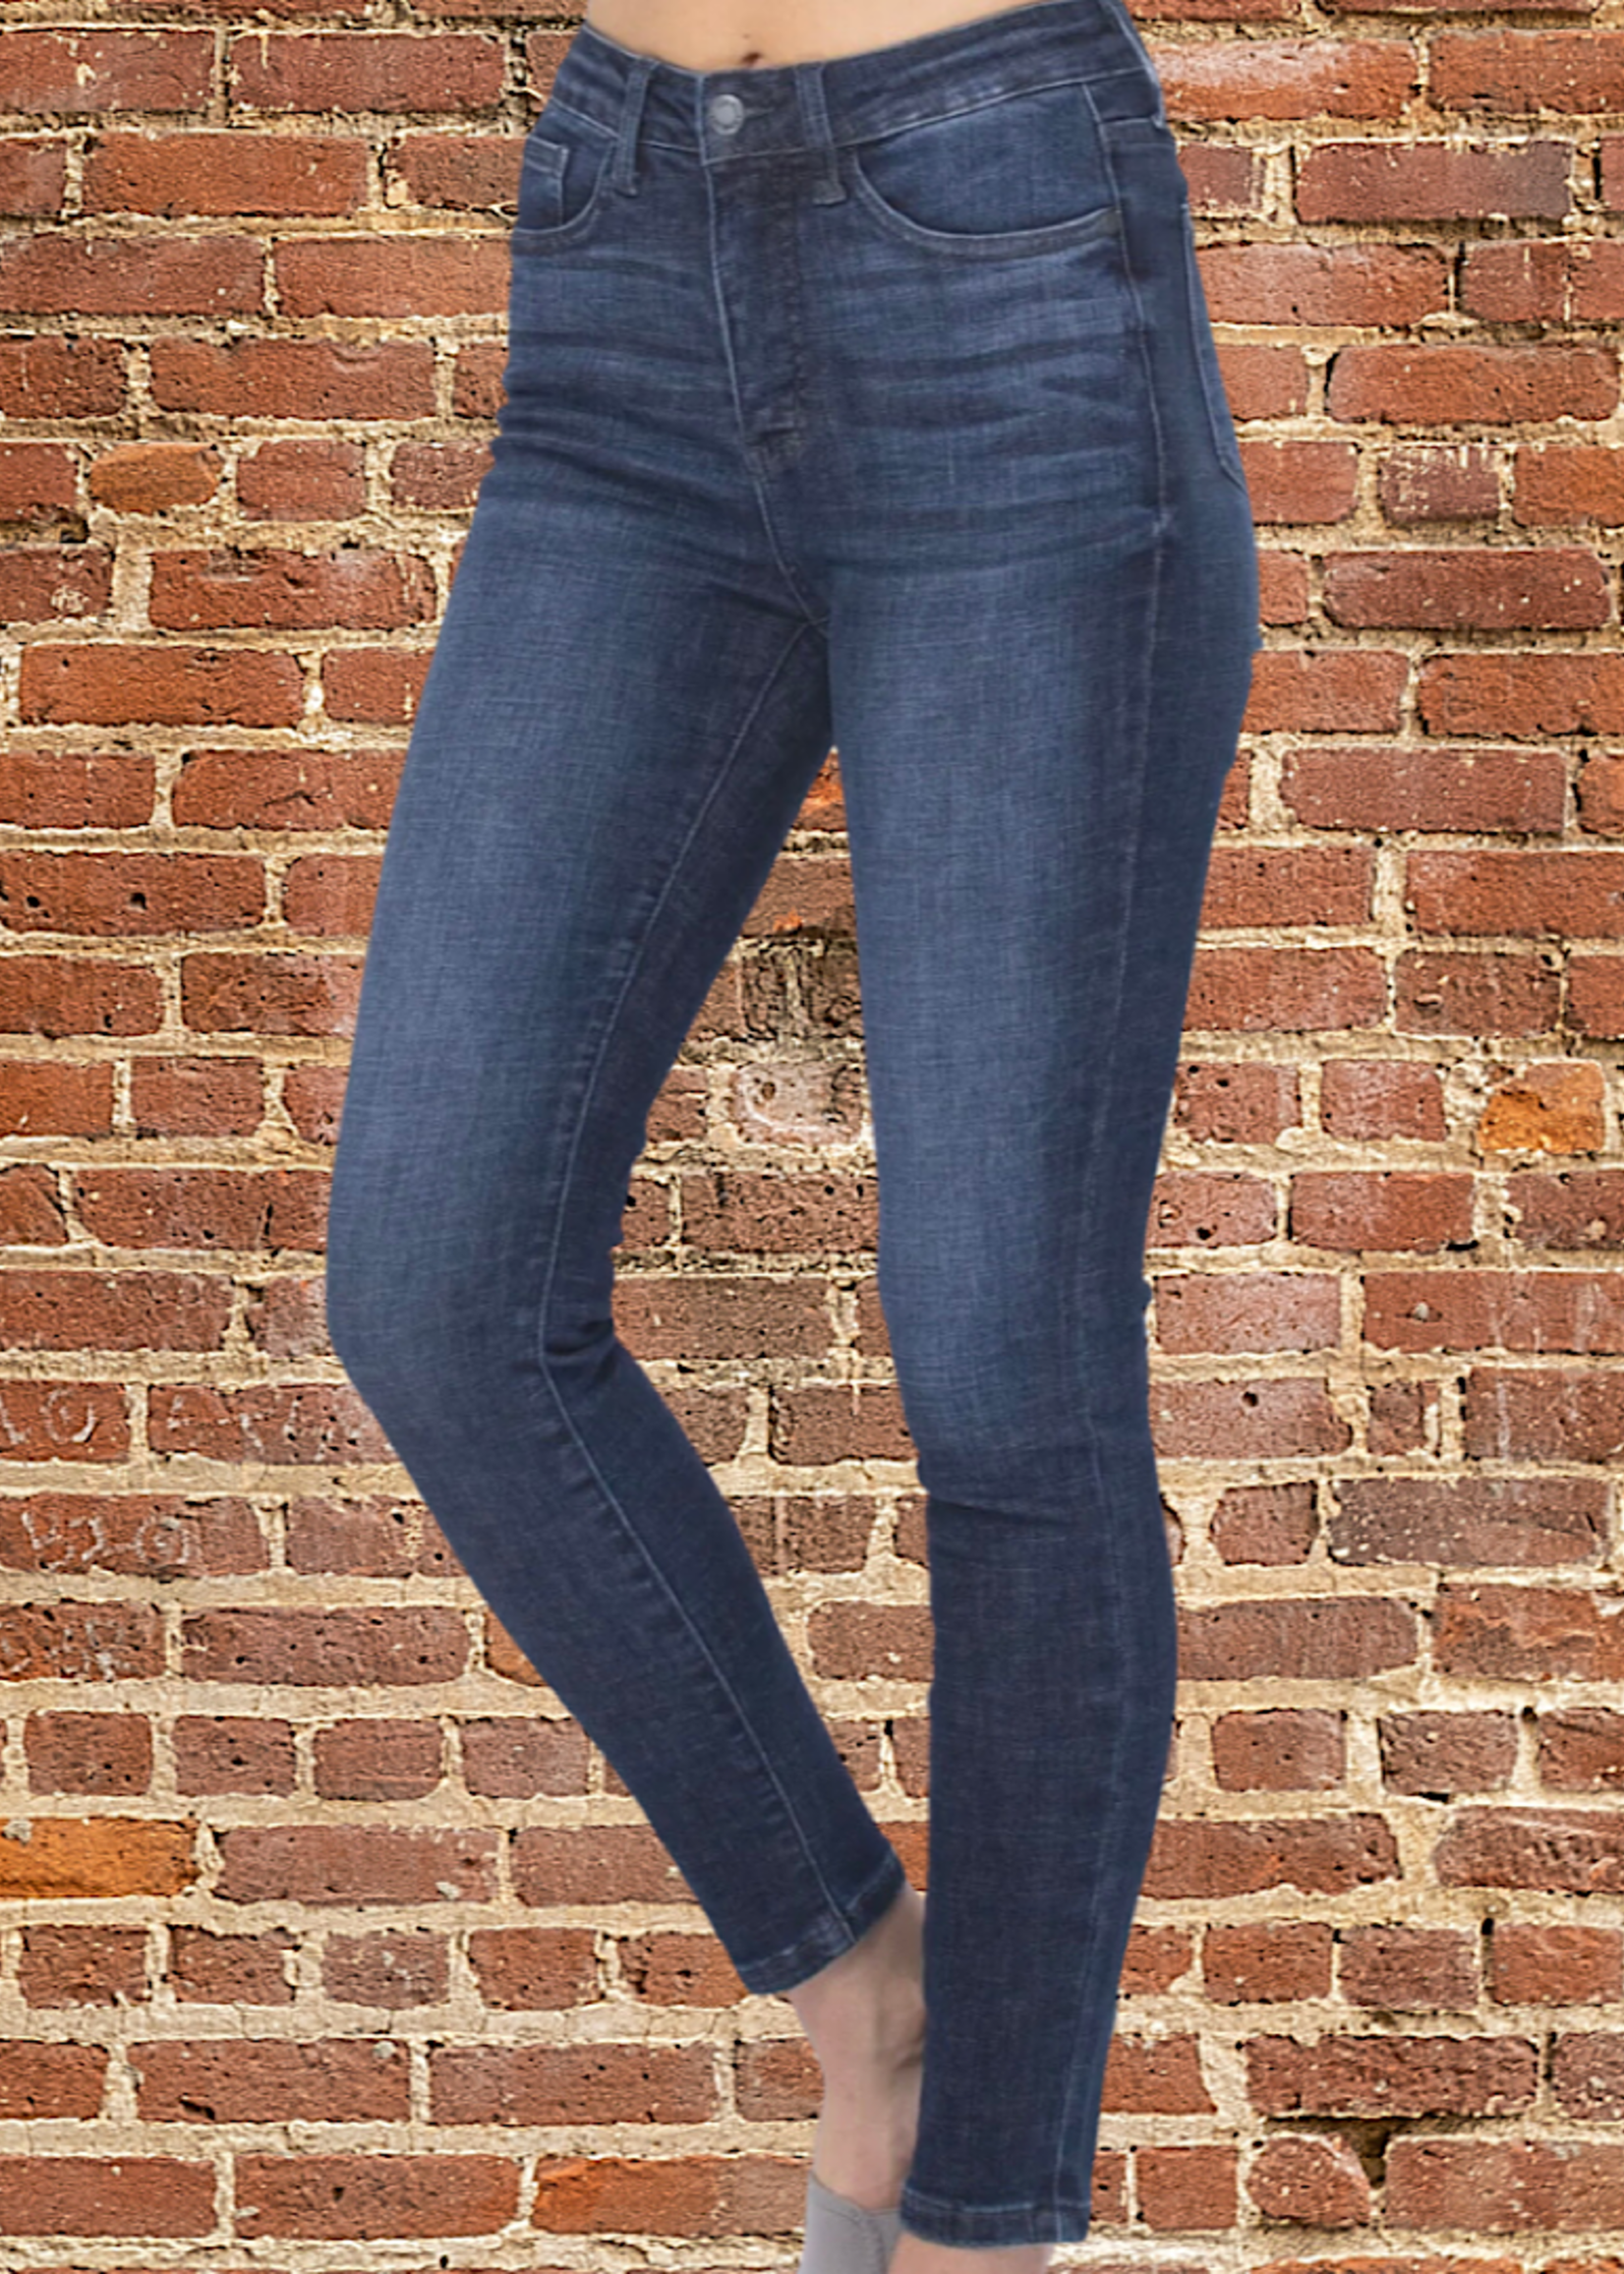 Kara TUMMY CONTROL Jeans By Judy Blue